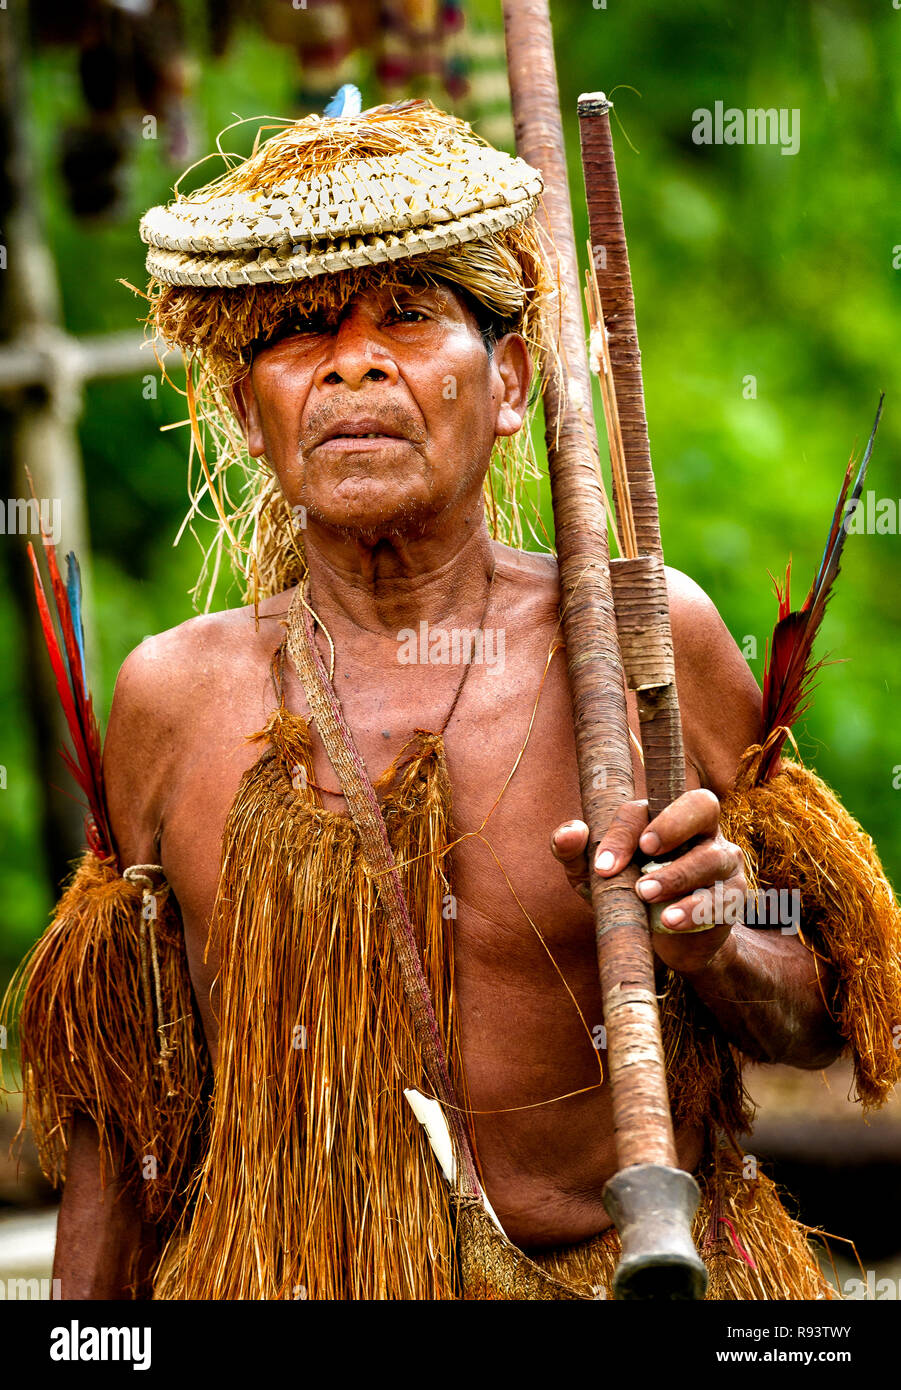 Llevando un anciano indio Yagua pucuna (soplete) en la amazonía peruana Foto de stock